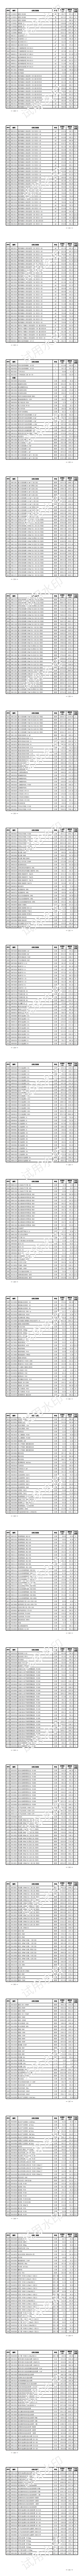 上海水务工程价格信息（2023年7月第六期）_06.png